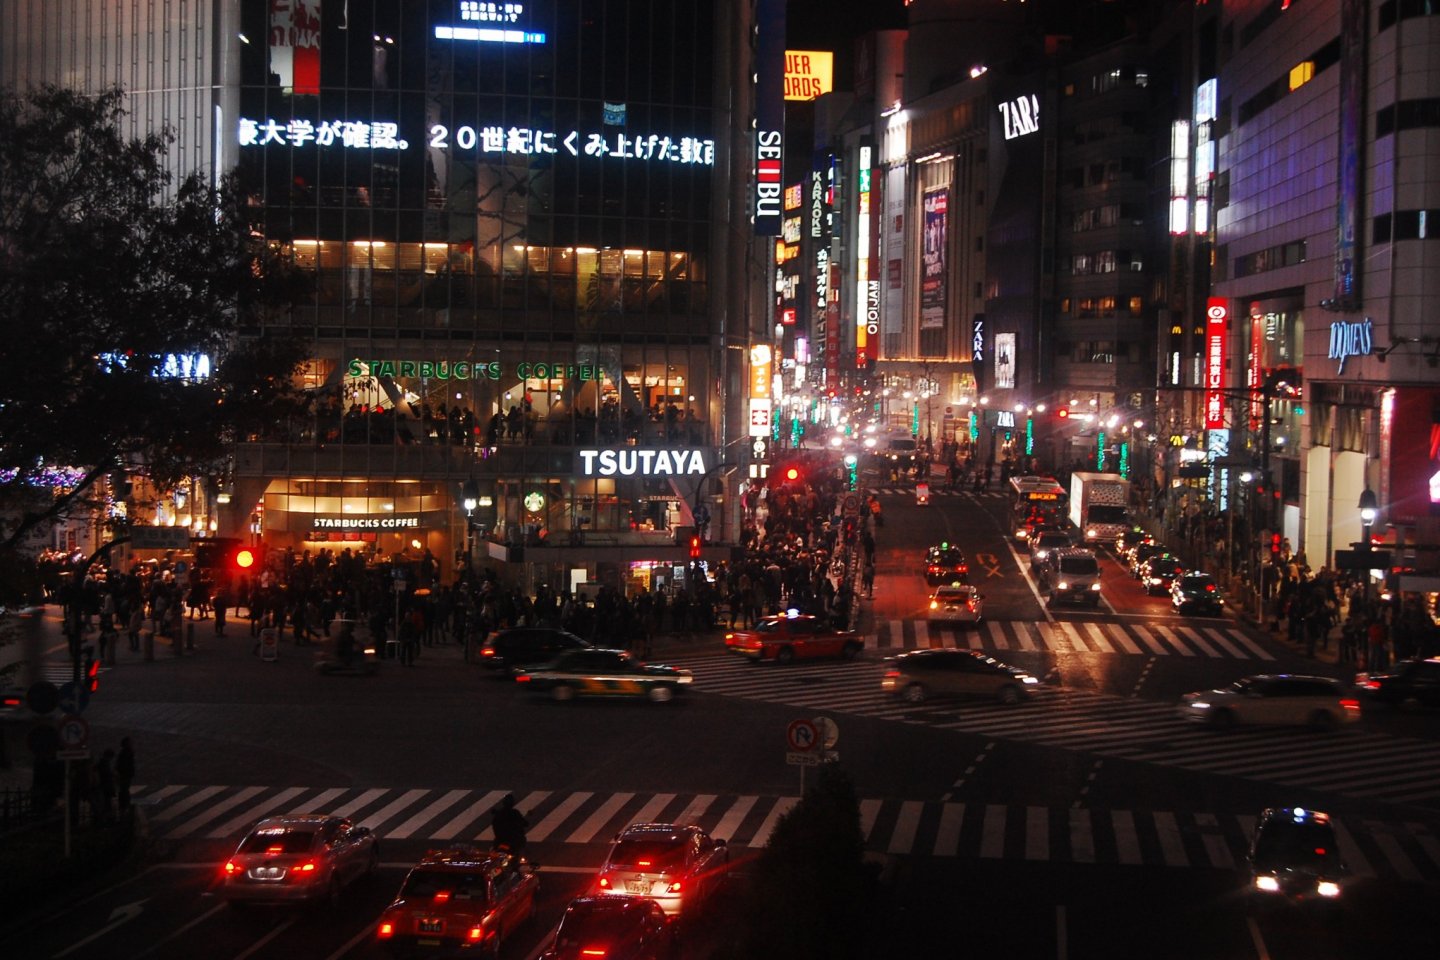 Shibuya crossing at night